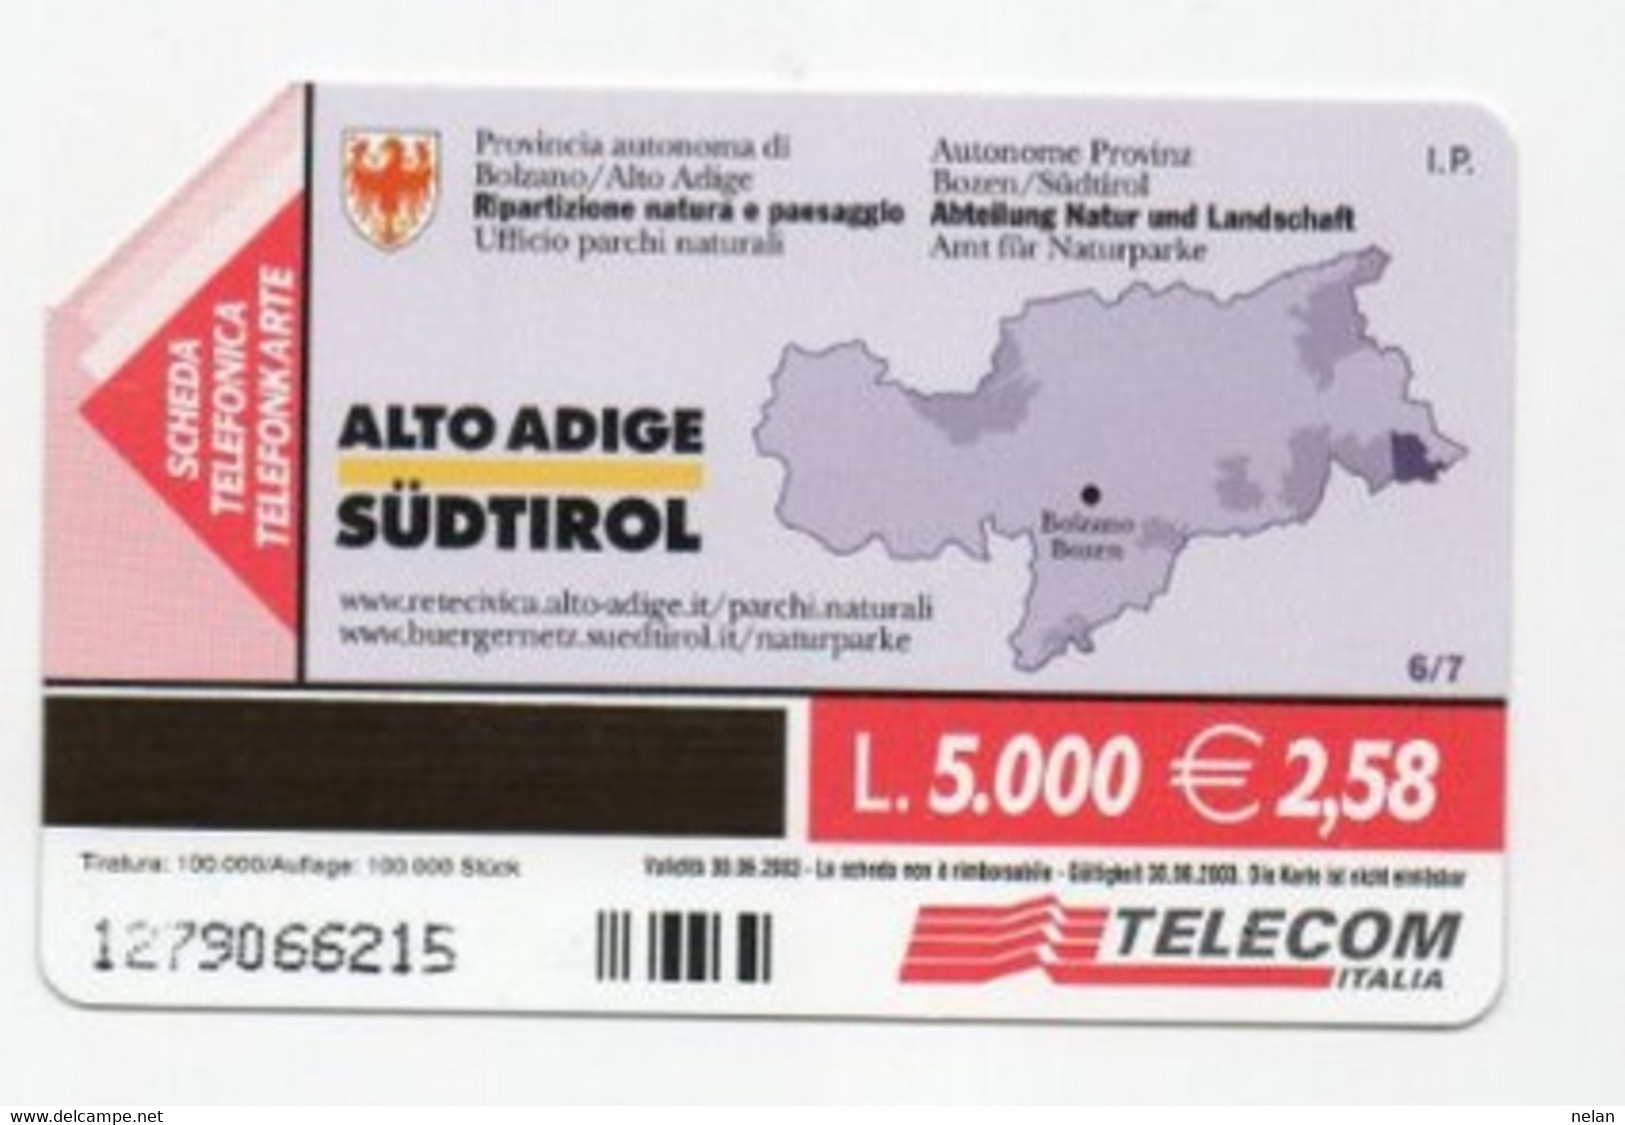 SCHEDA TELEFONICA - PHONE CARD - ITALIA - TELECOM - ALTO ADIGE - Gebirgslandschaften